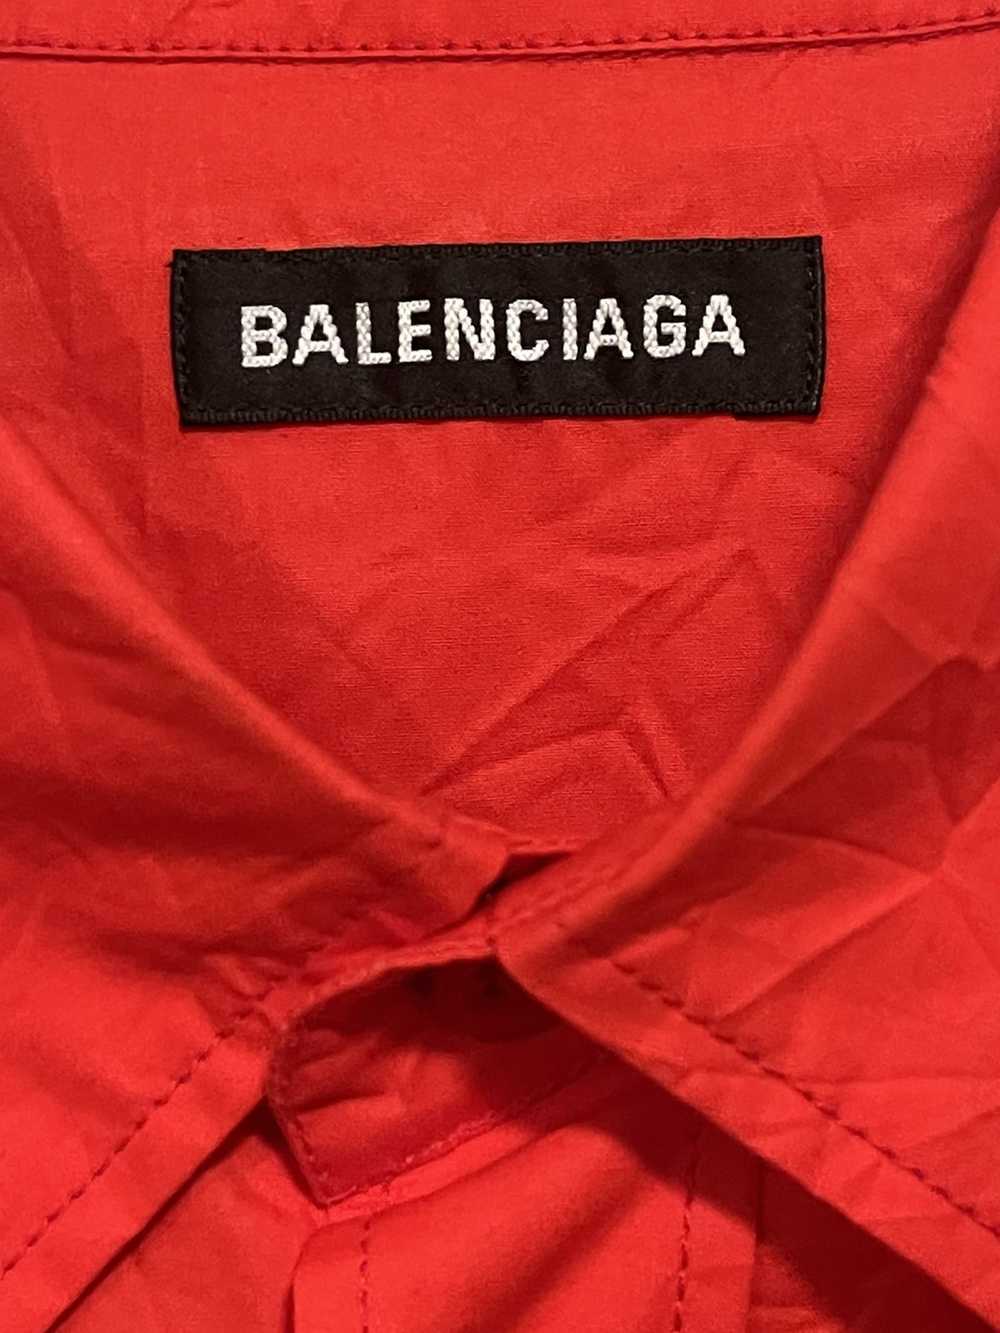 Balenciaga Balenciaga men’s long sleeve shirt - image 5